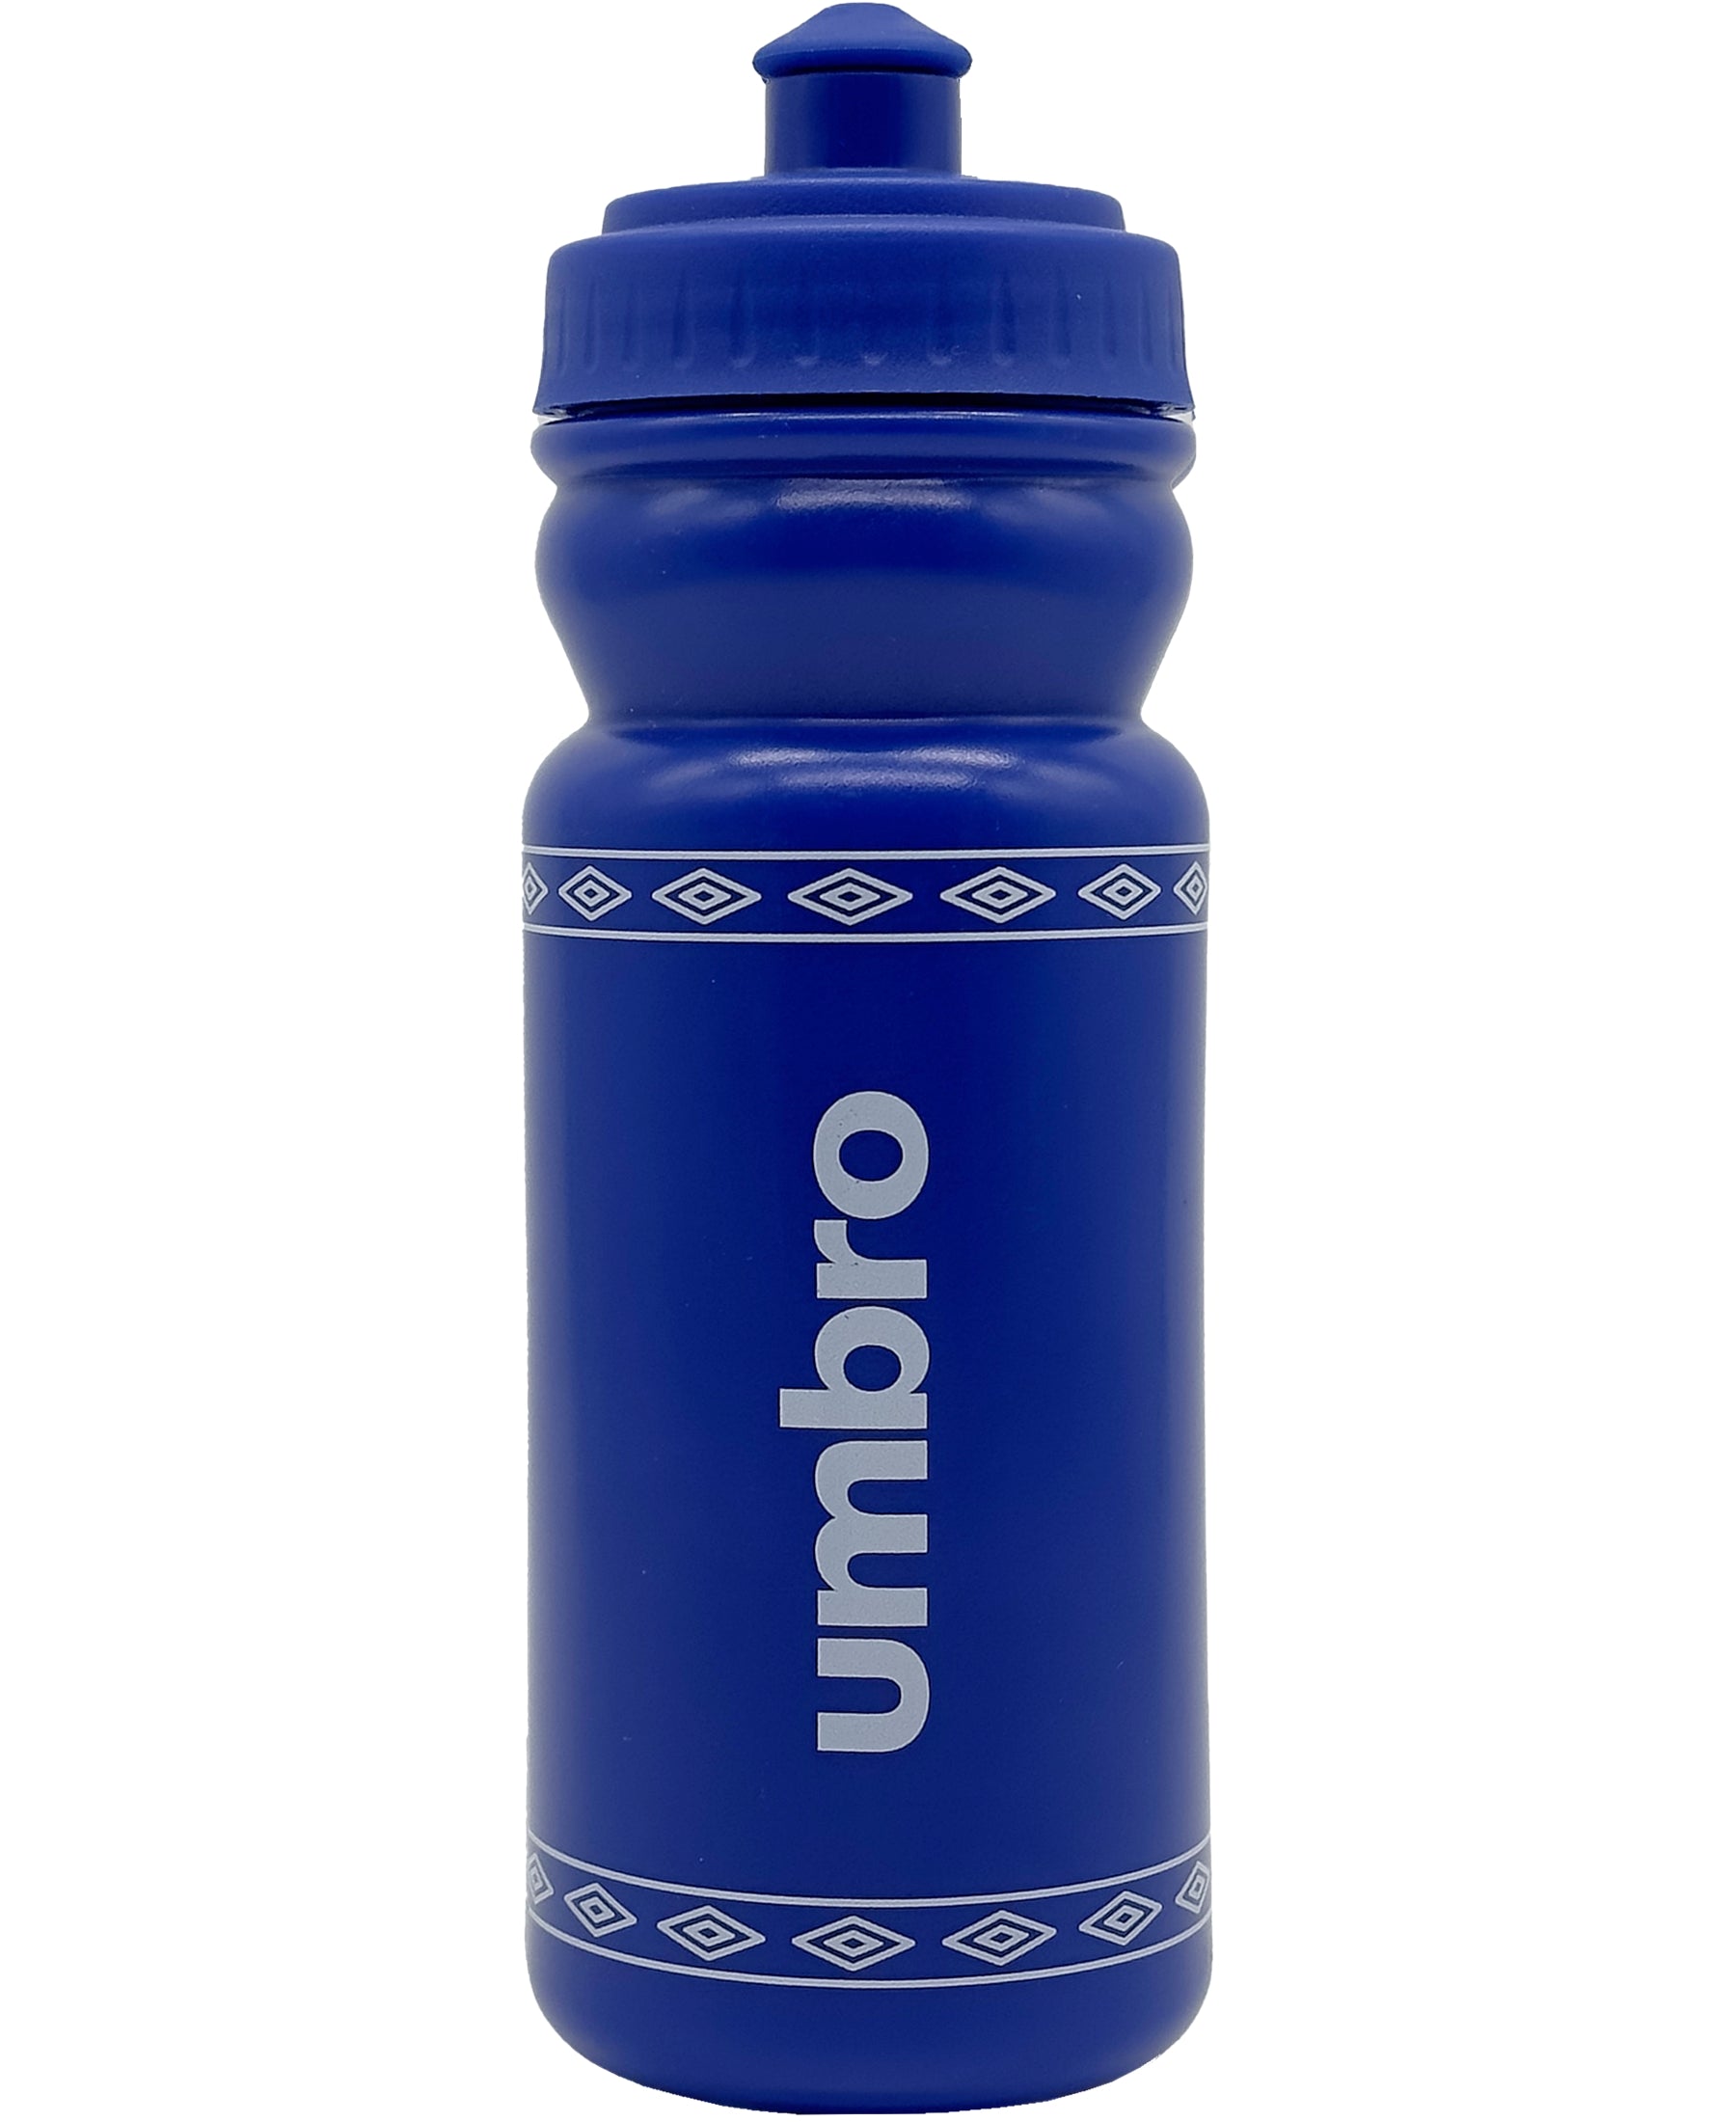 Bleib gut hydriert beim Training und Wettkampf mit der Umbro Bidon Bottle 0.5 Trinkflasche (UMAM0179-192). Praktisch und leicht, bei SHOP4TEAMSPORT erhältlich. Hol sie dir noch heute, um deinen Durst zu löschen und deine Leistung zu steigern.